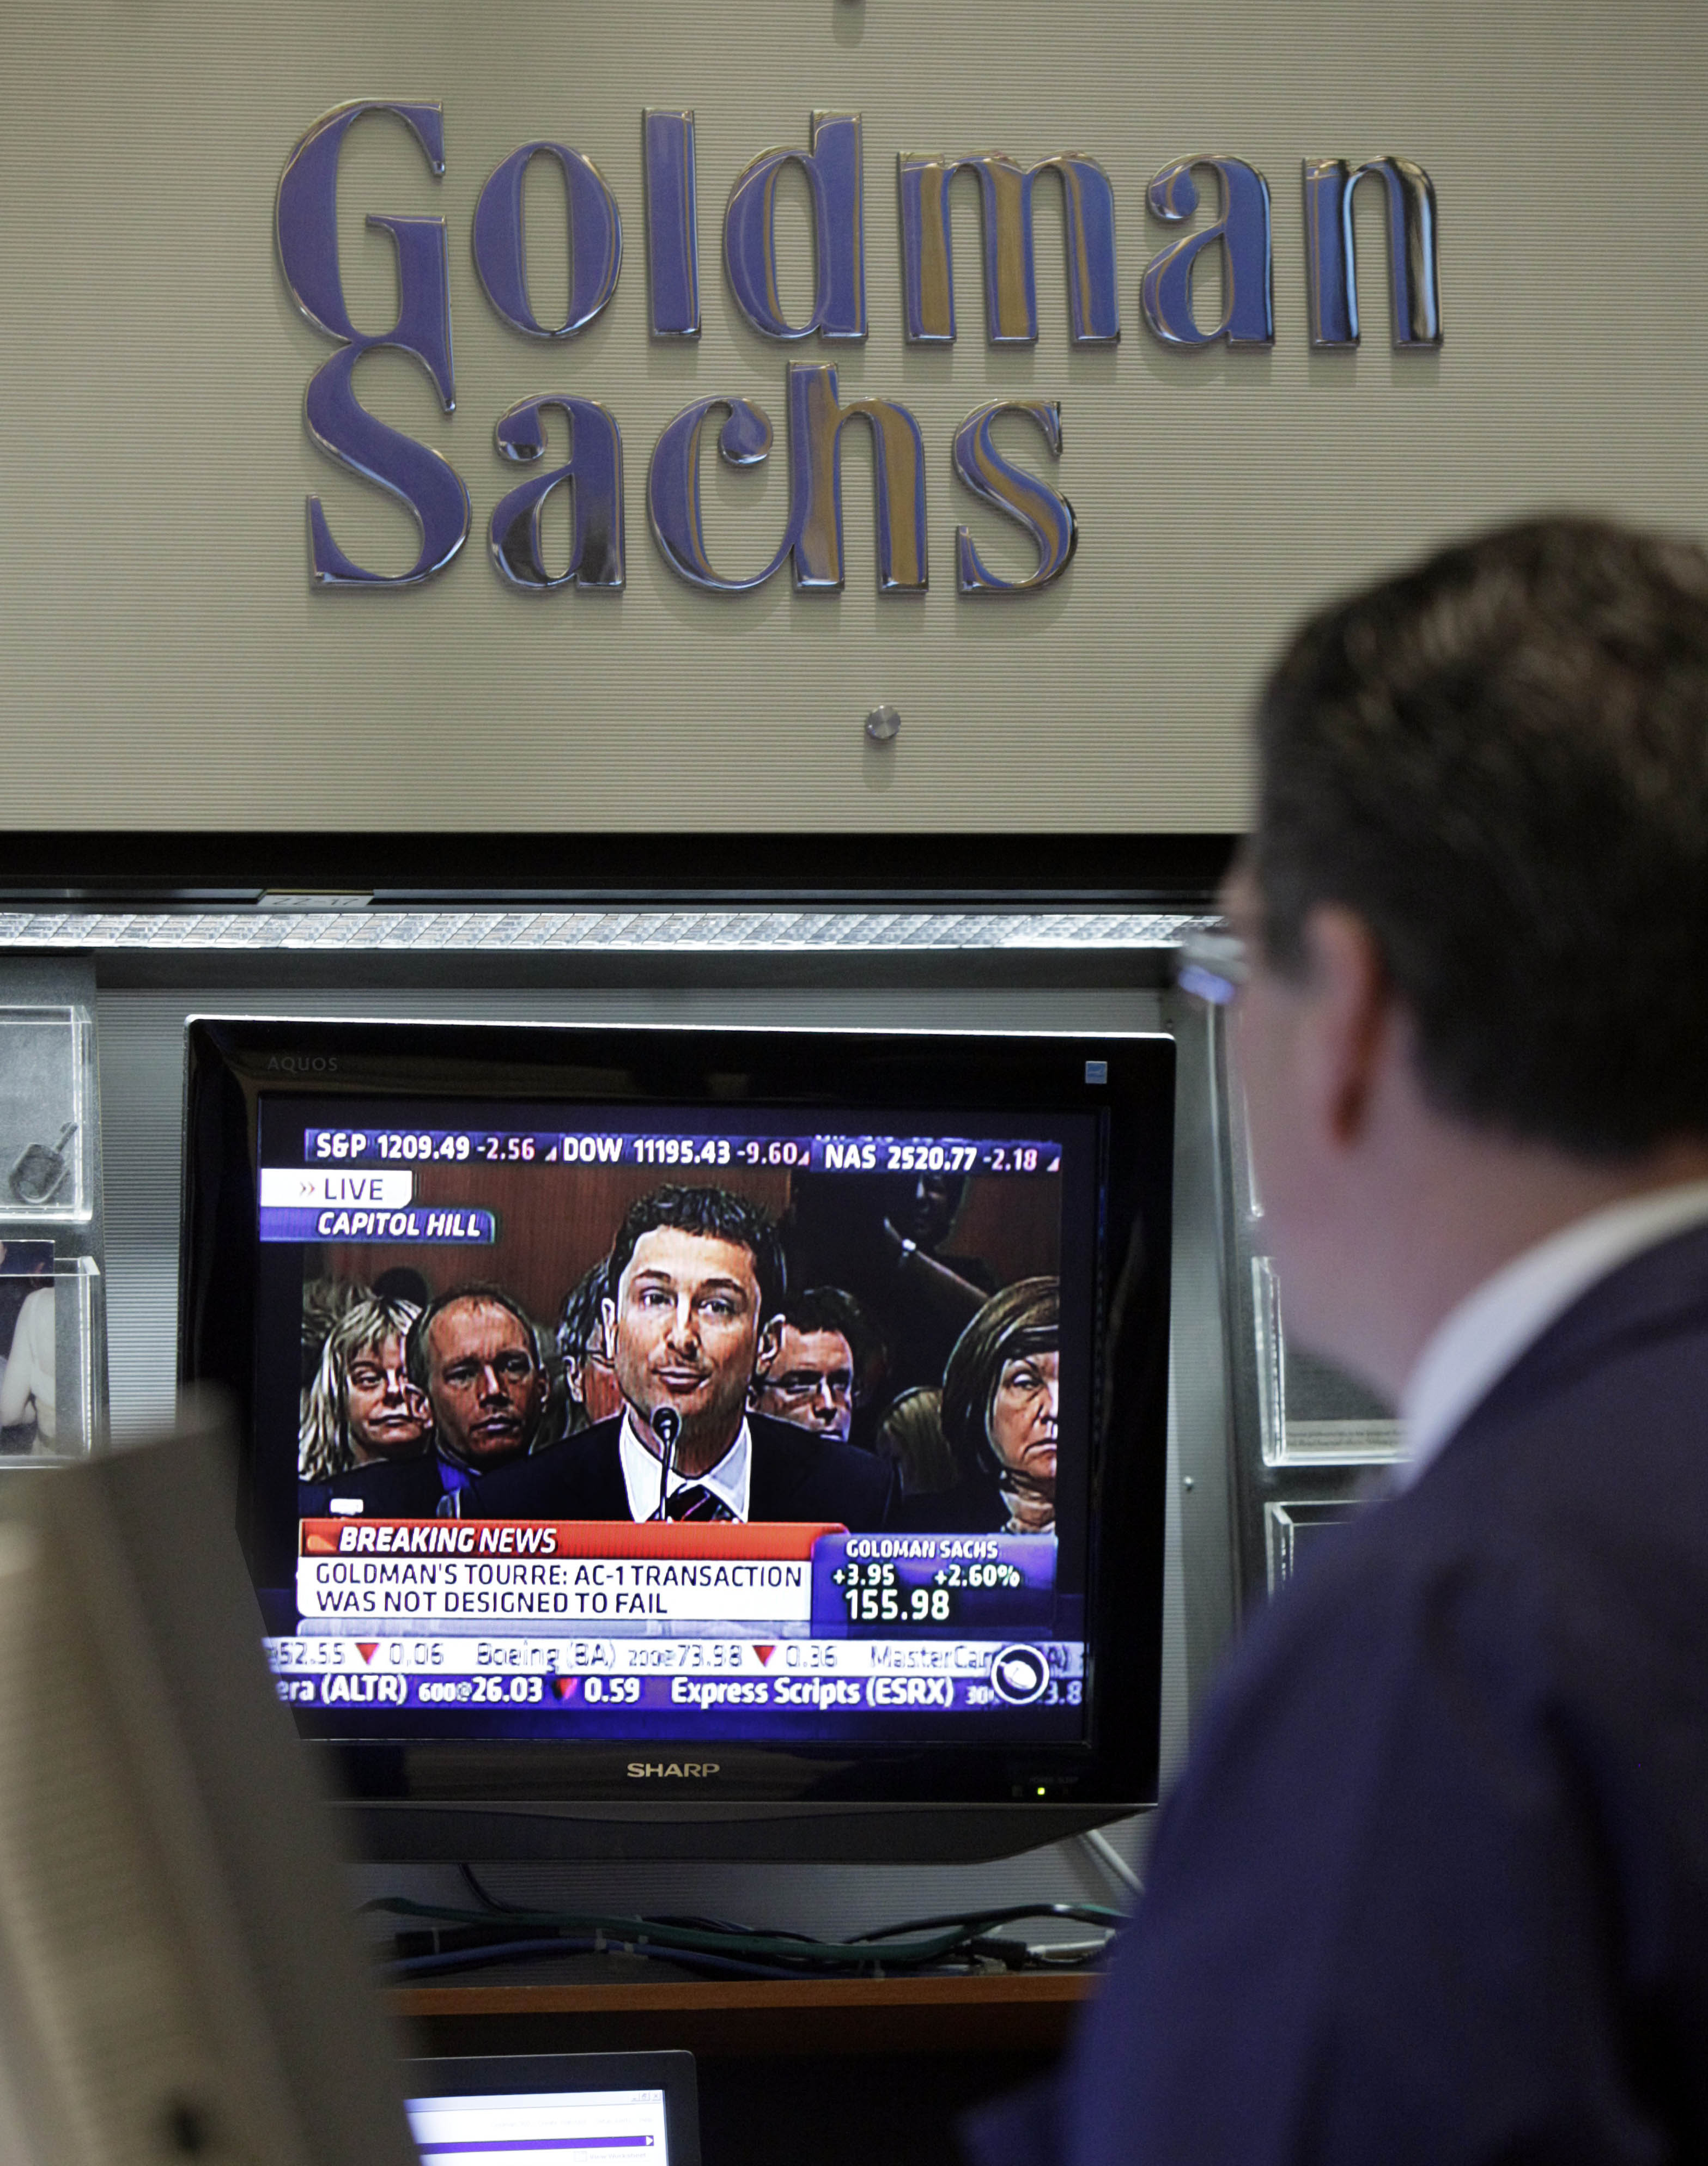 Den kontroversiella bankjätten Goldman Sachs kan bli nästa mål för Wikileaks.